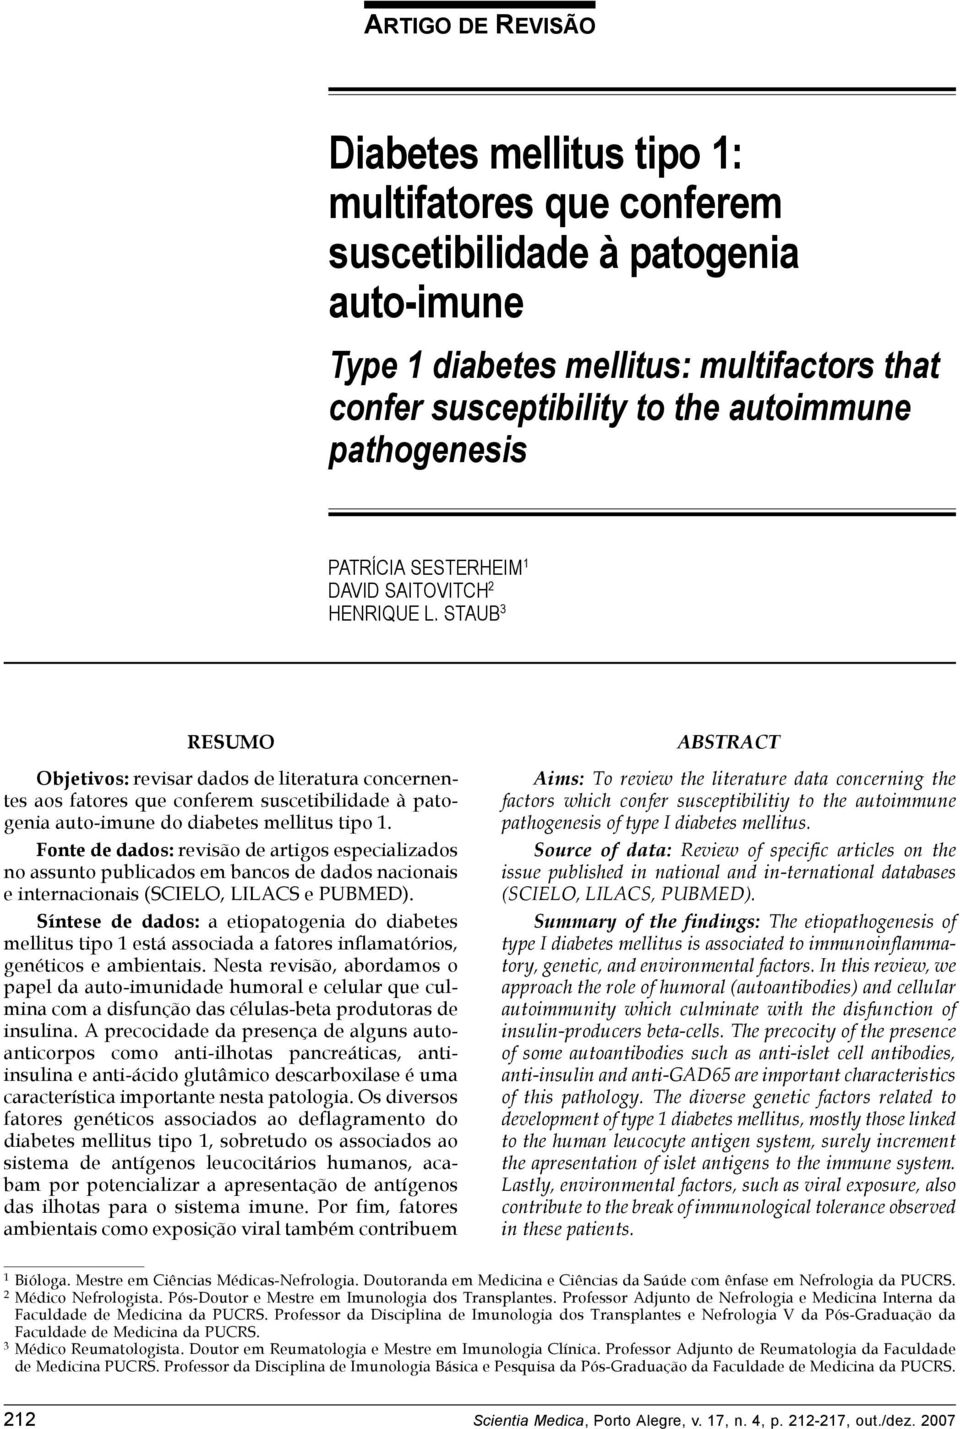 STAUB 3 RESUMO Objetivos: revisar dados de literatura concernentes aos fatores que conferem suscetibilidade à patogenia auto-imune do diabetes mellitus tipo 1.